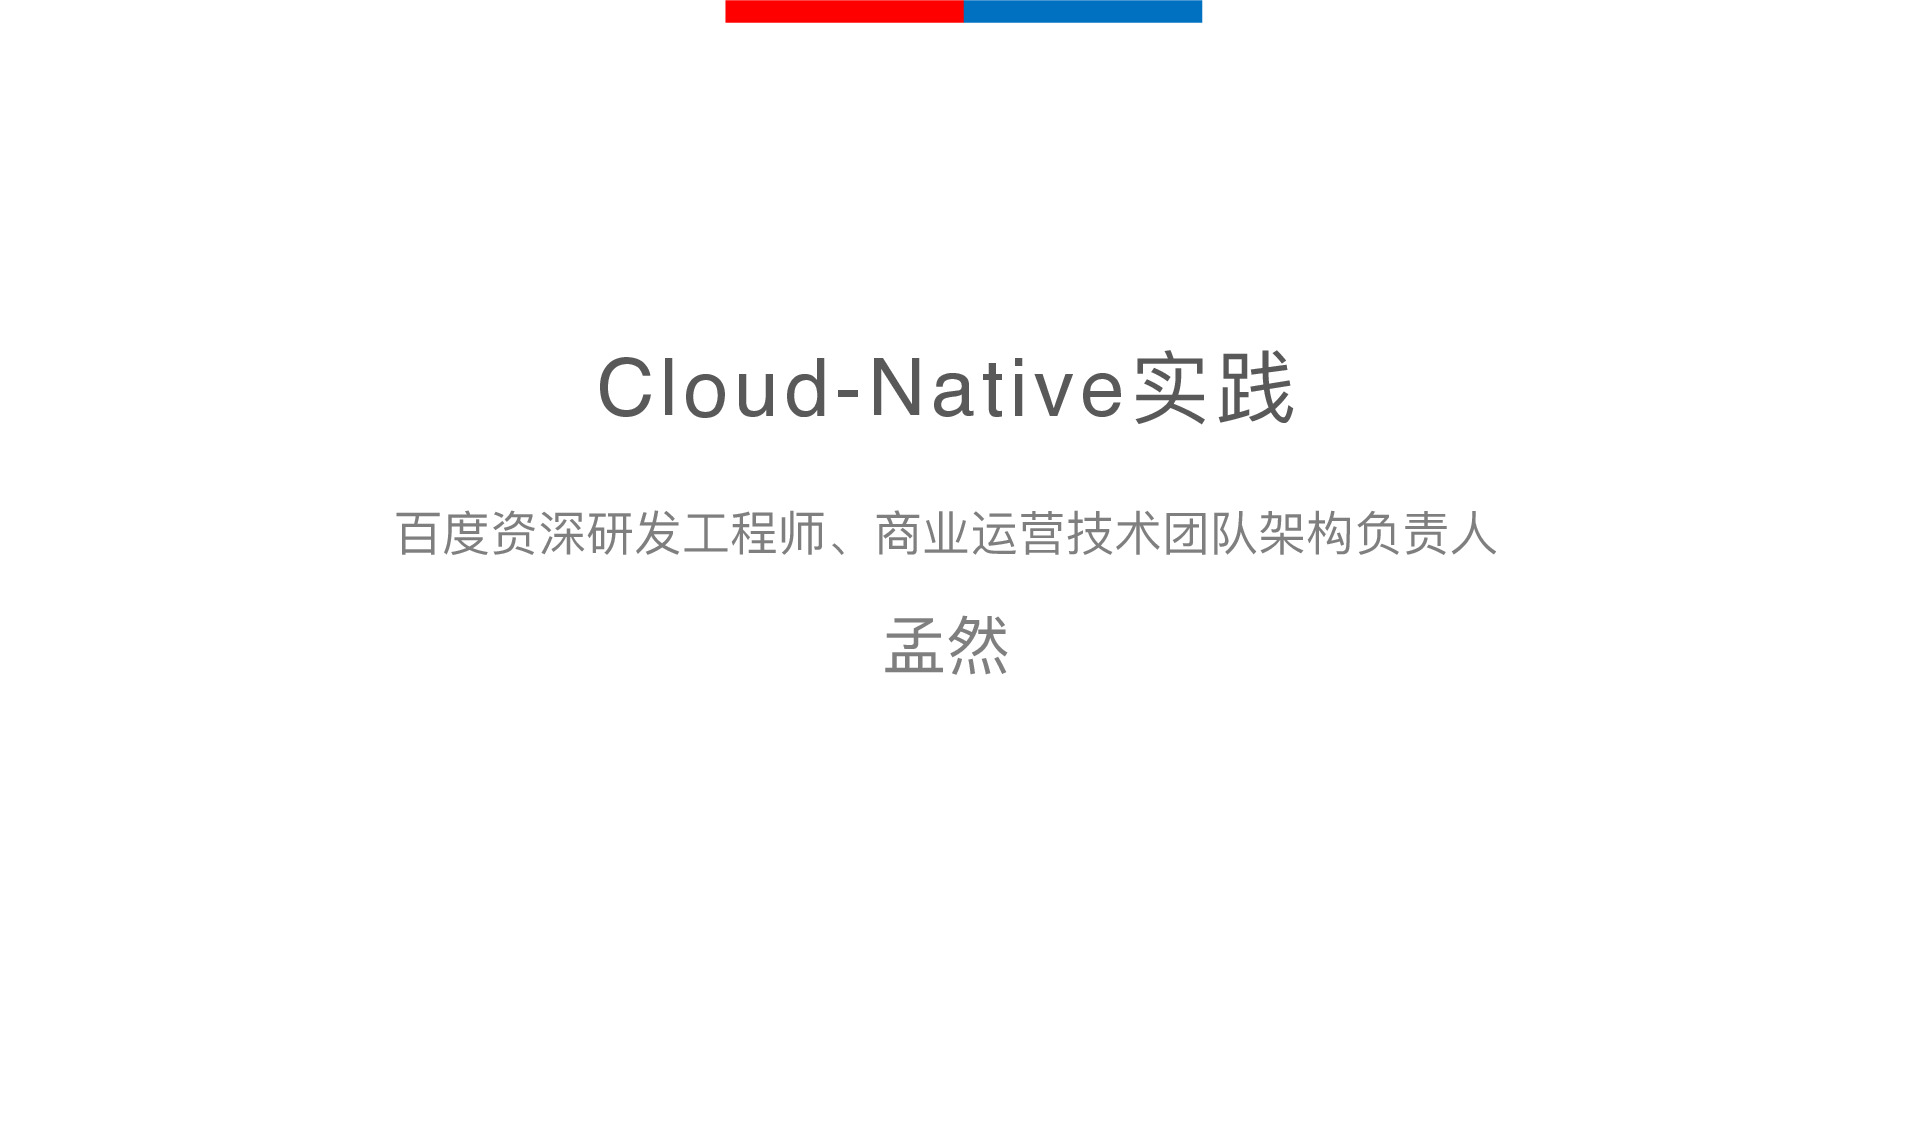 百度商业运营技术团队的Cloud-Native实践